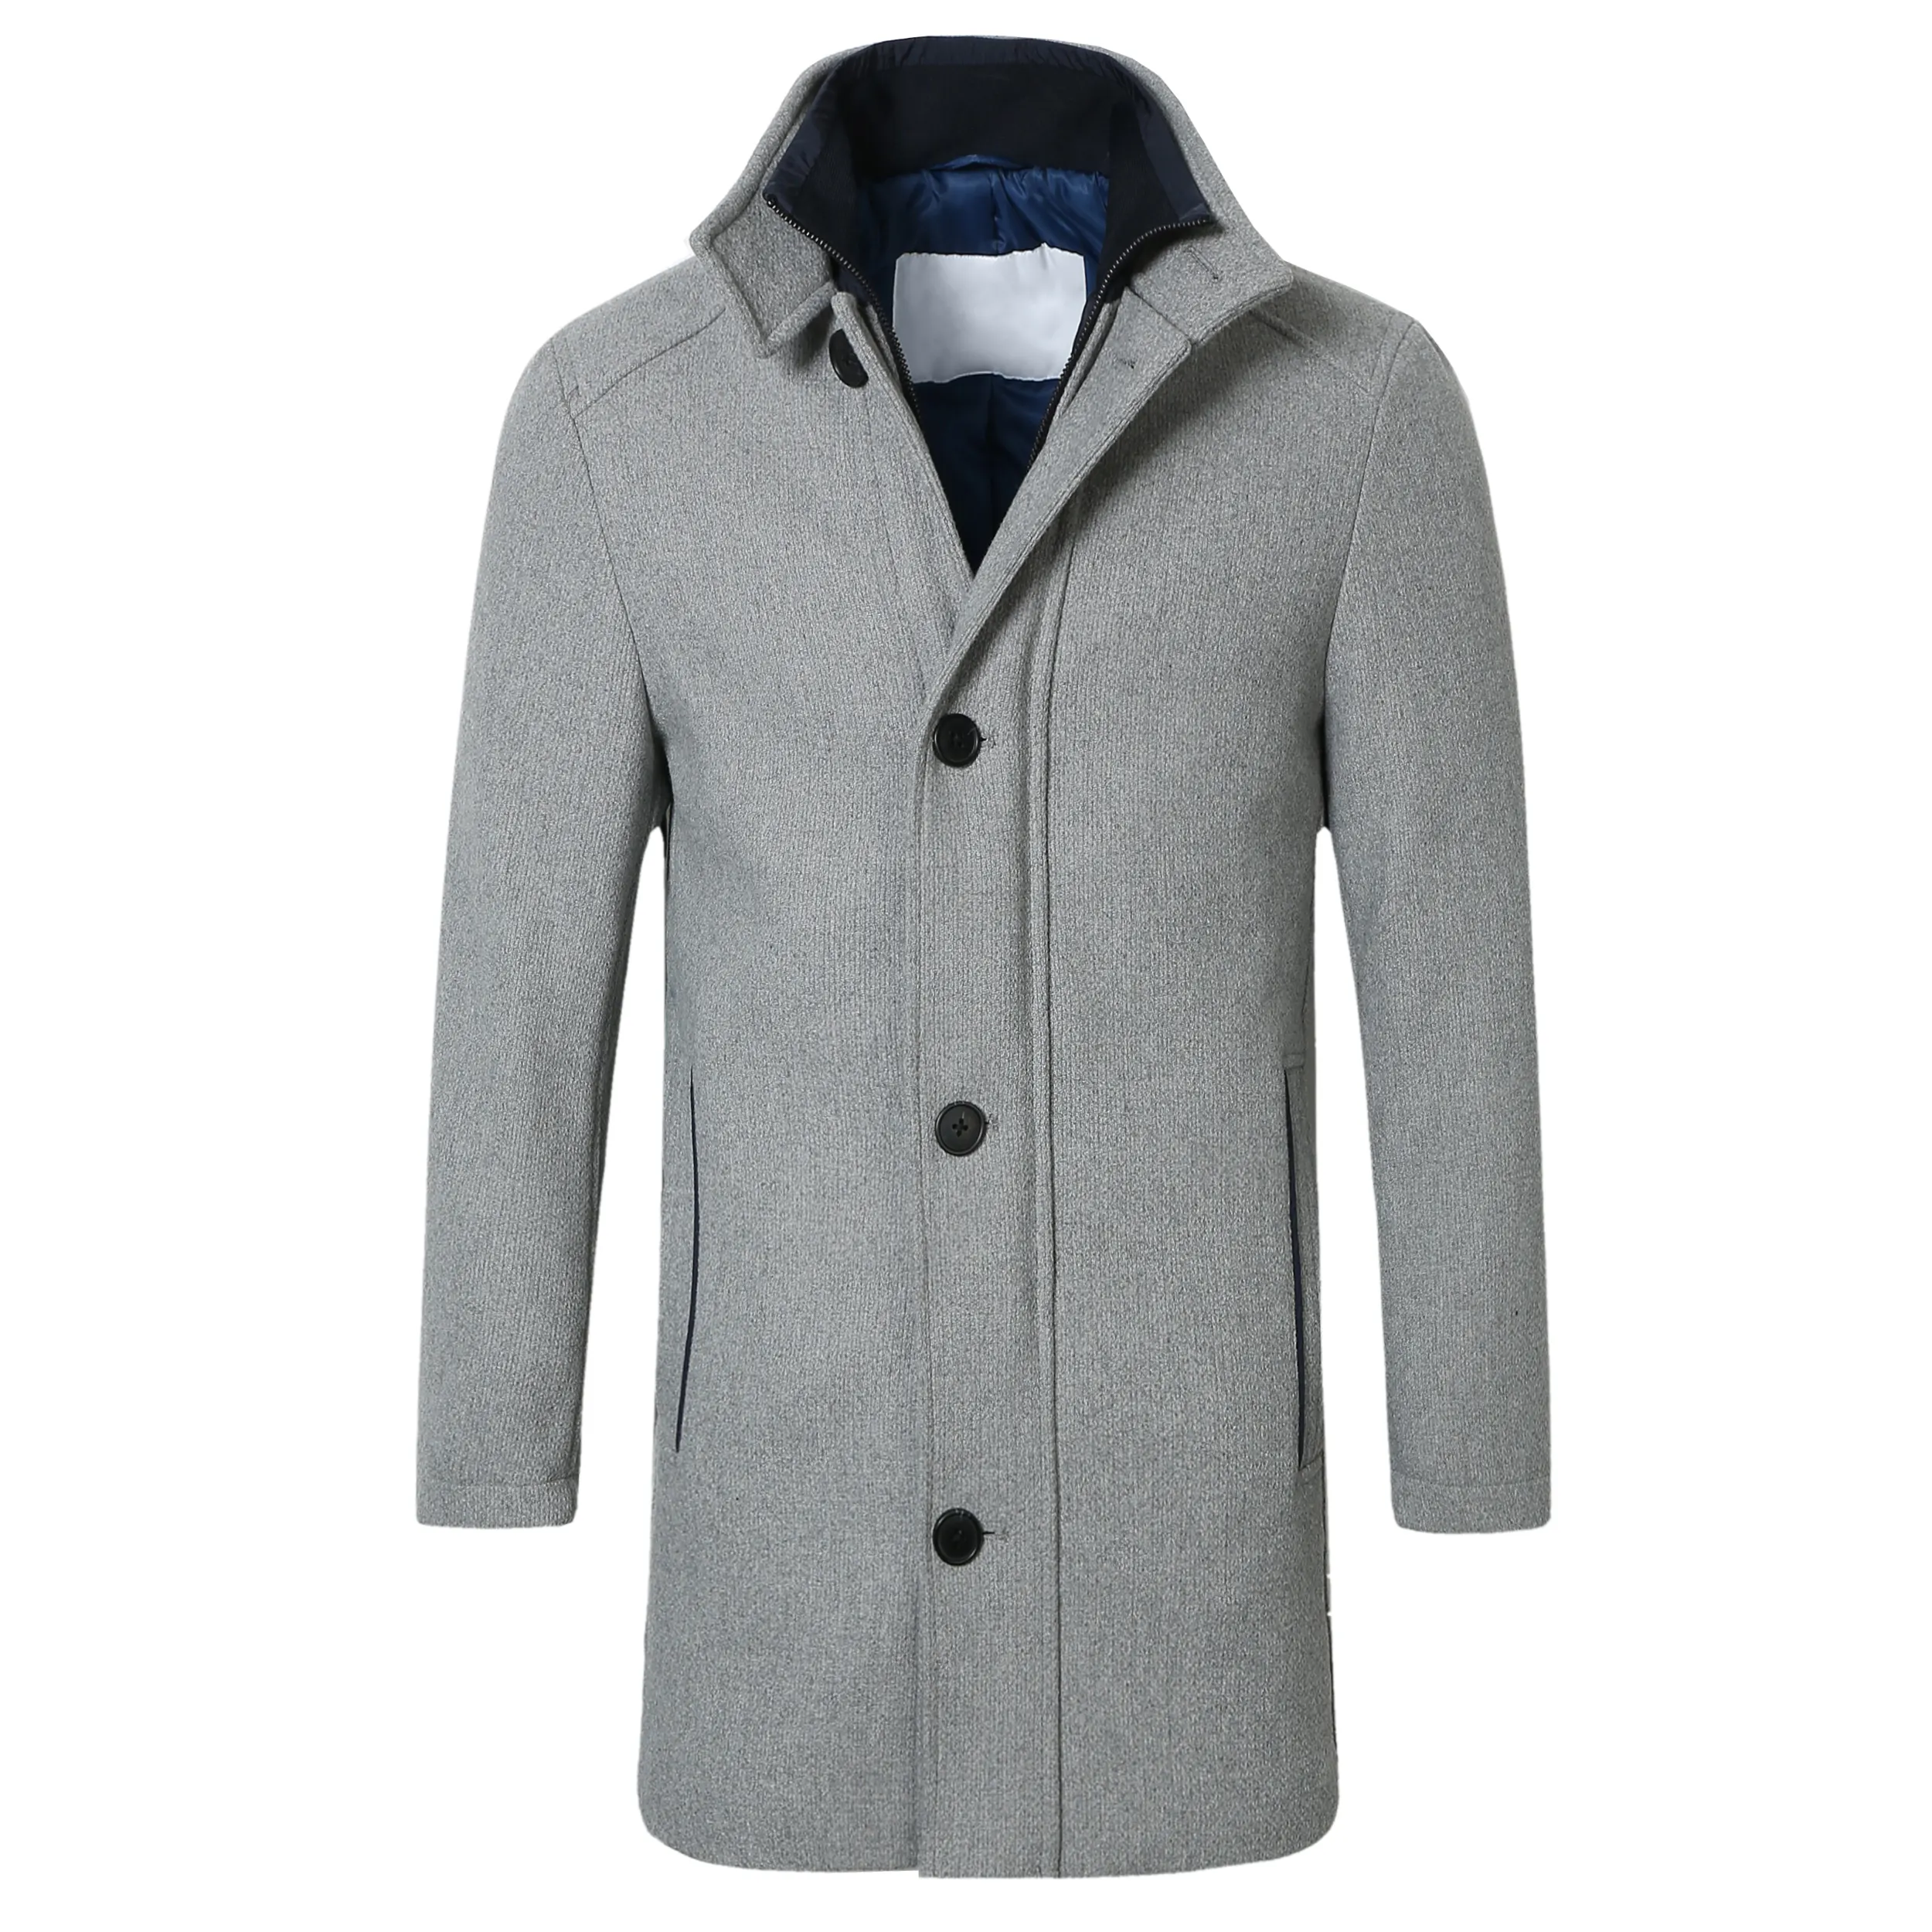 Winter Woolen Coat Men Stand Collar Grey Male Thick Long Trench Coat Pocket Slim Mens Overcoat